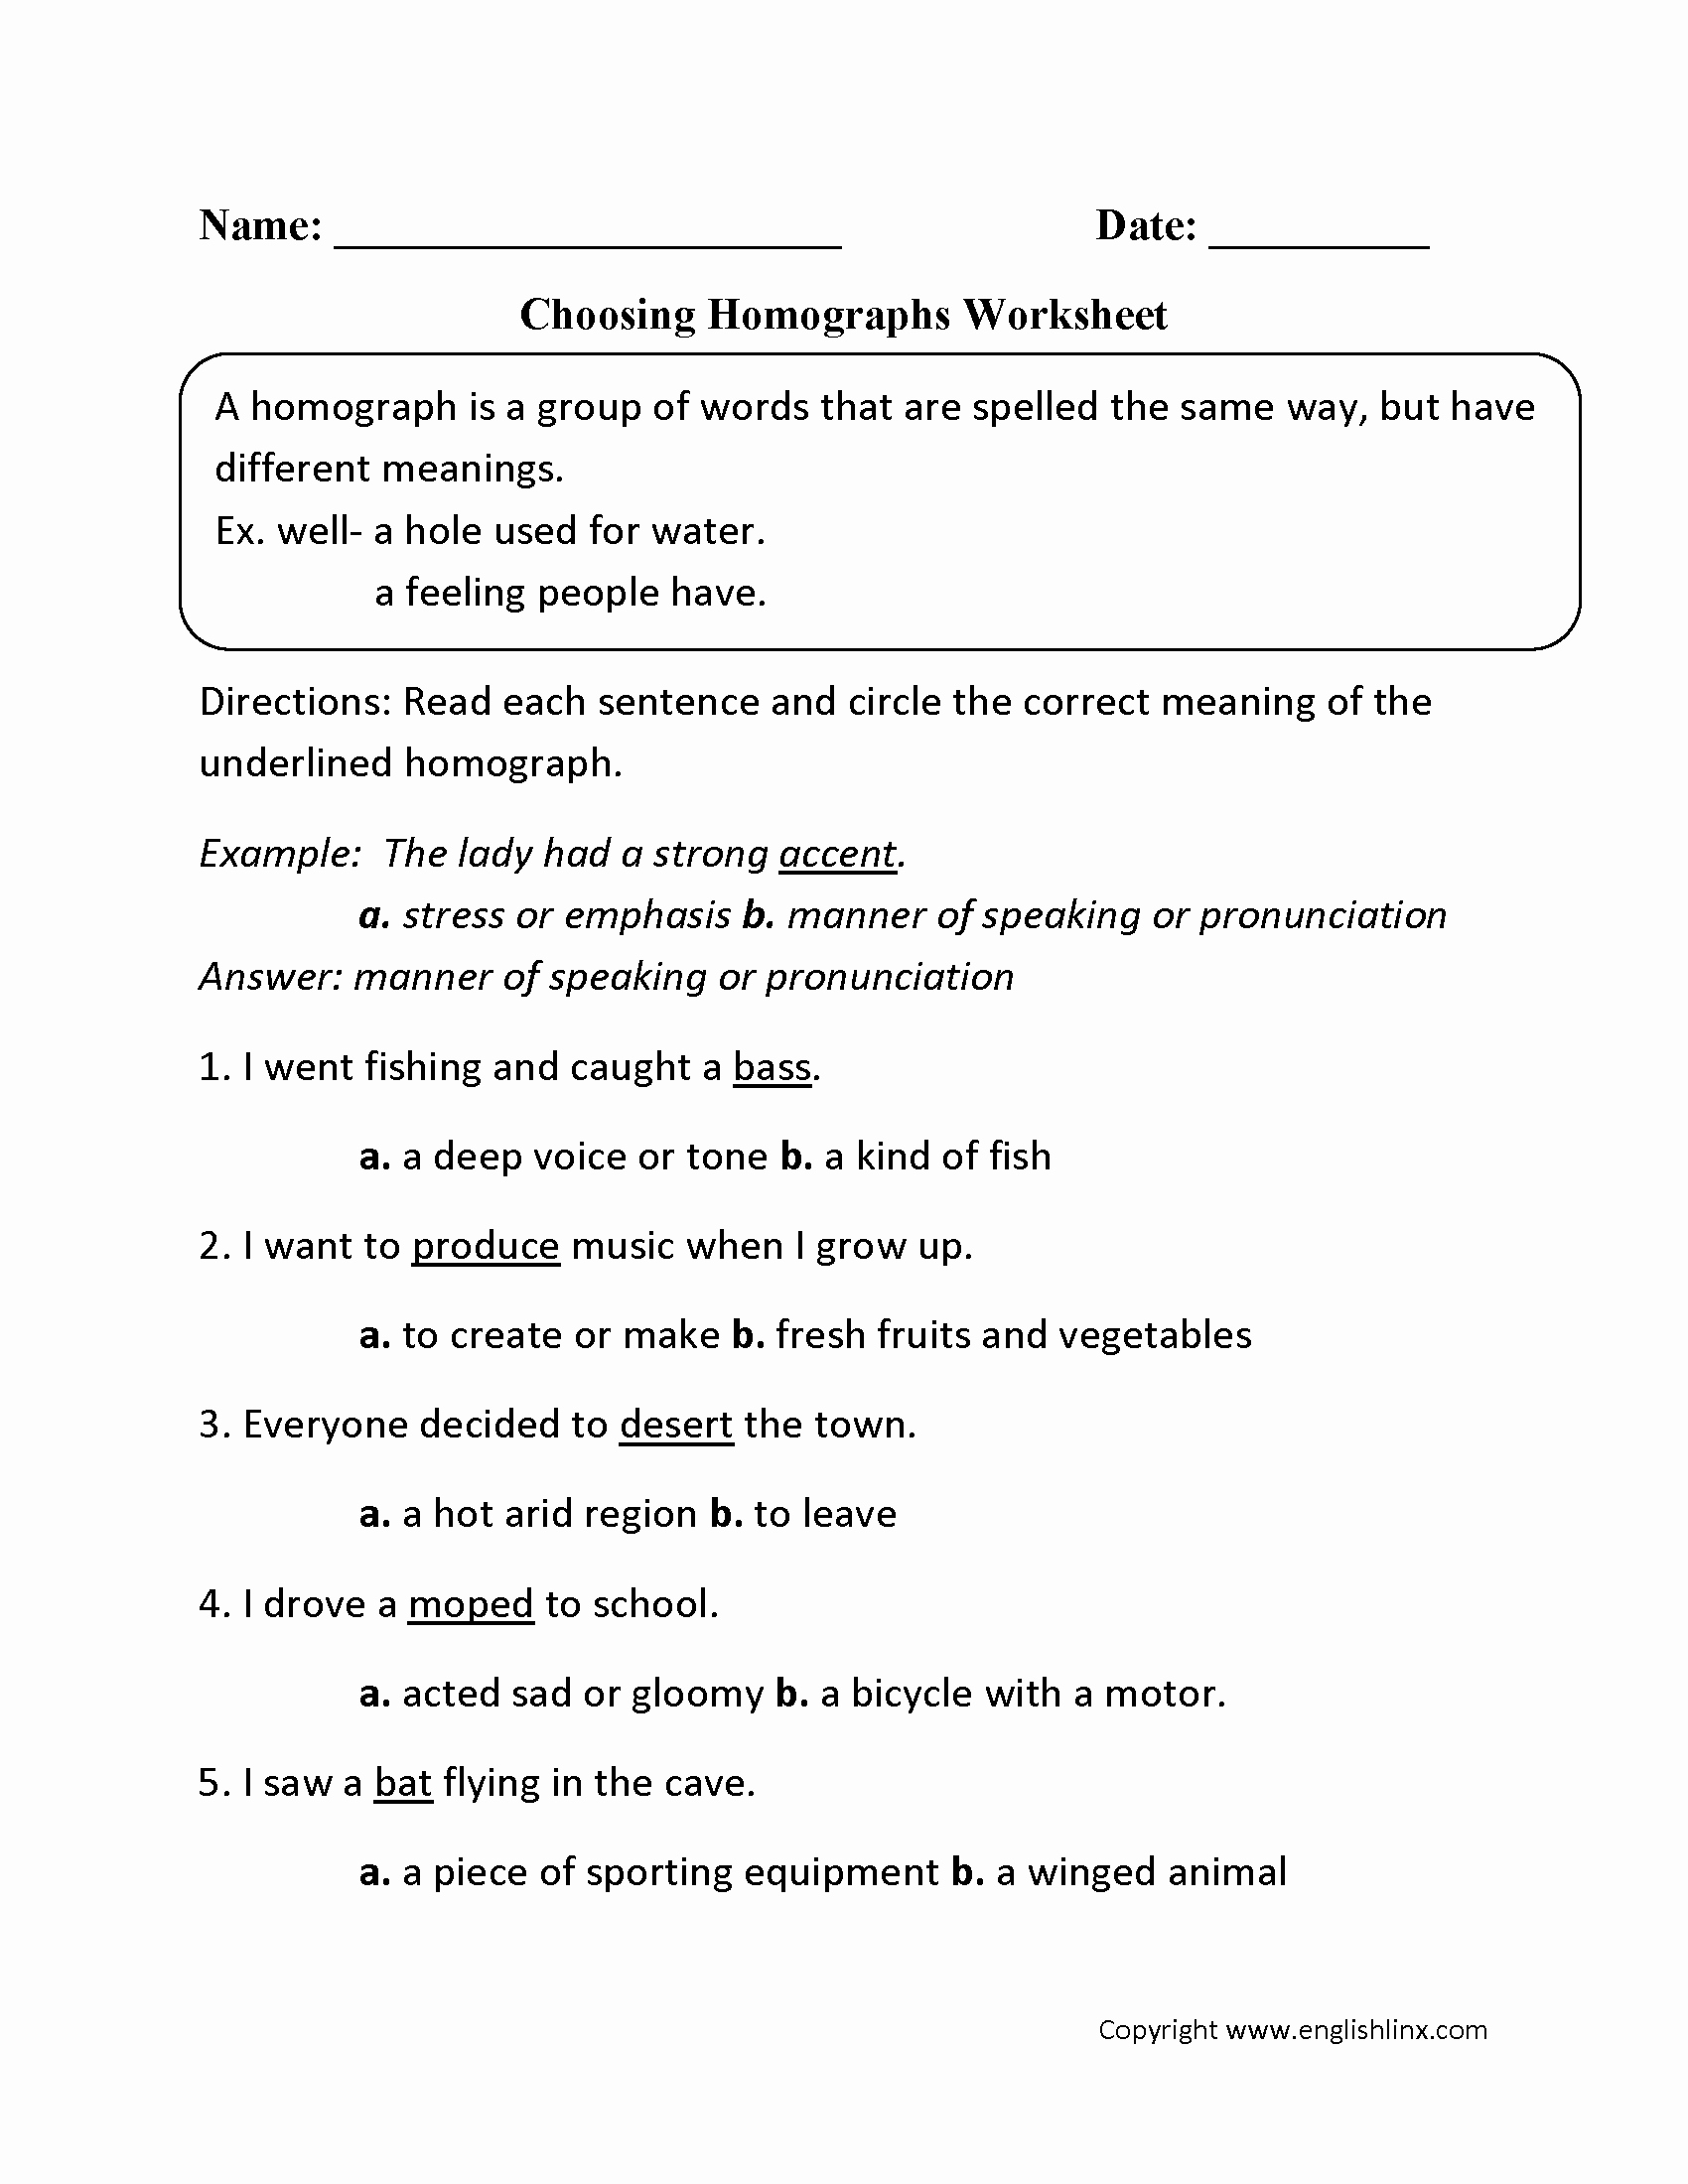 Homograph Worksheets 5th Grade Fresh 24 Homograph Worksheet 5th Grade Background